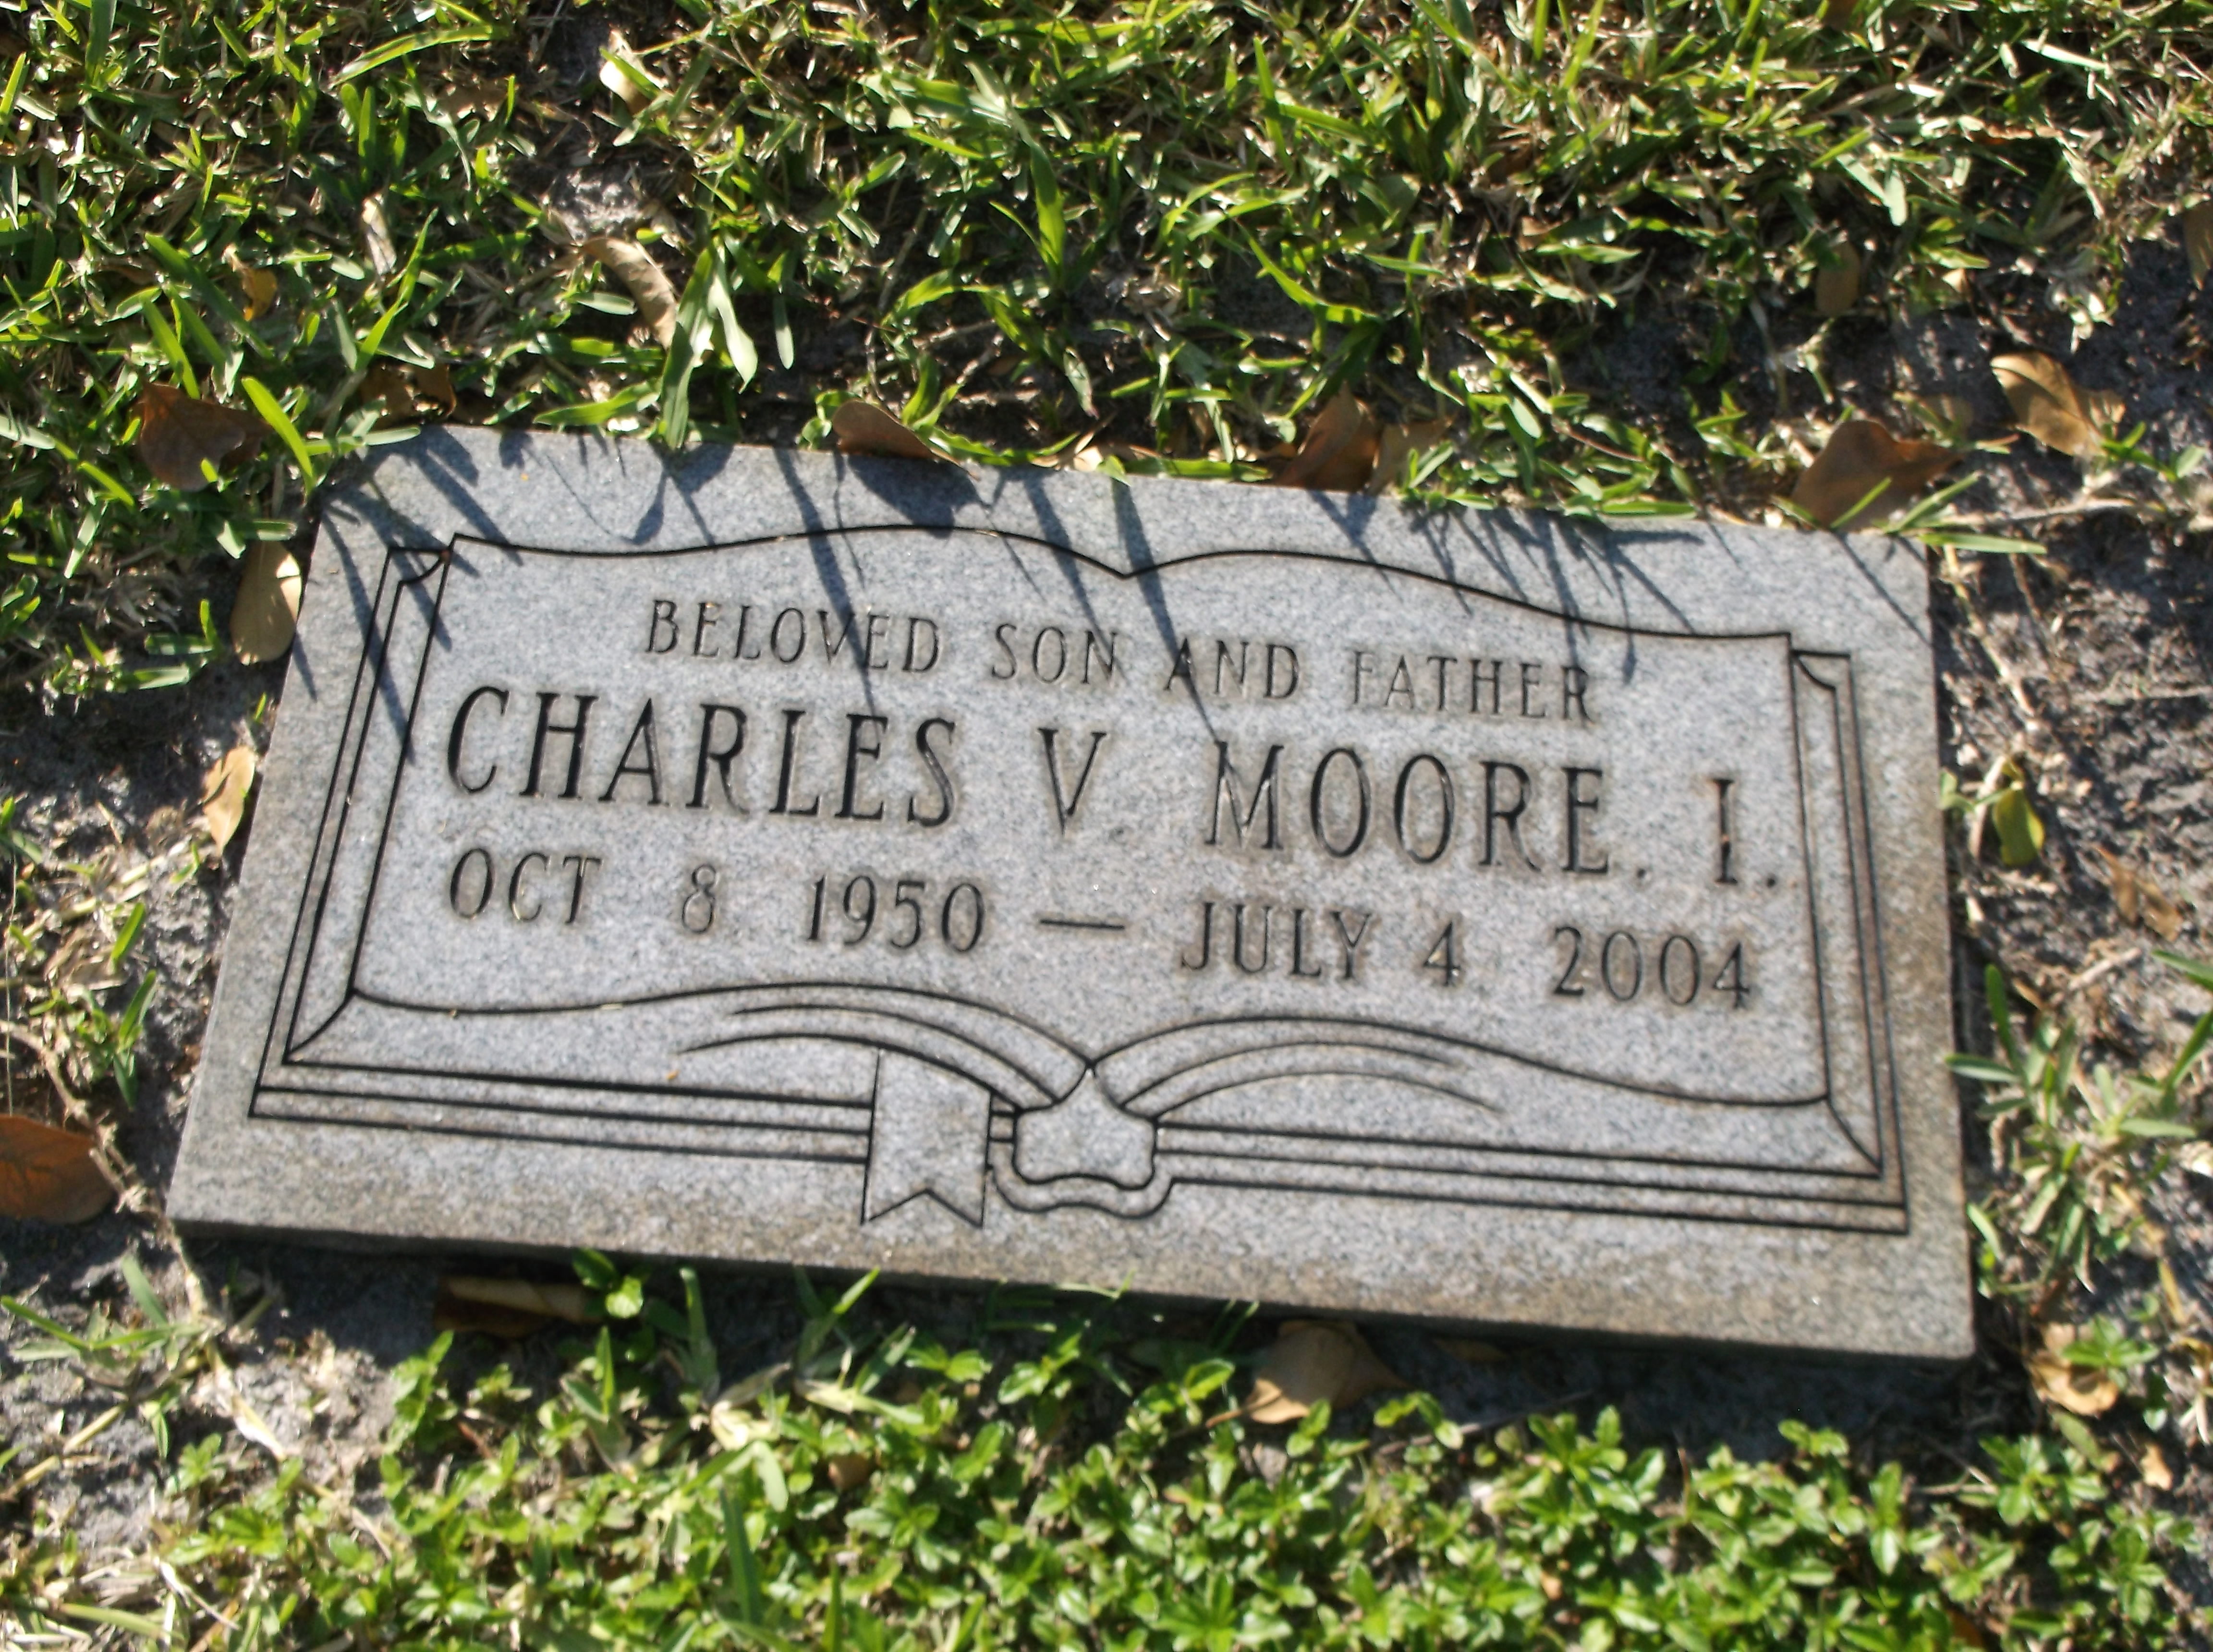 Charles V Moore, I